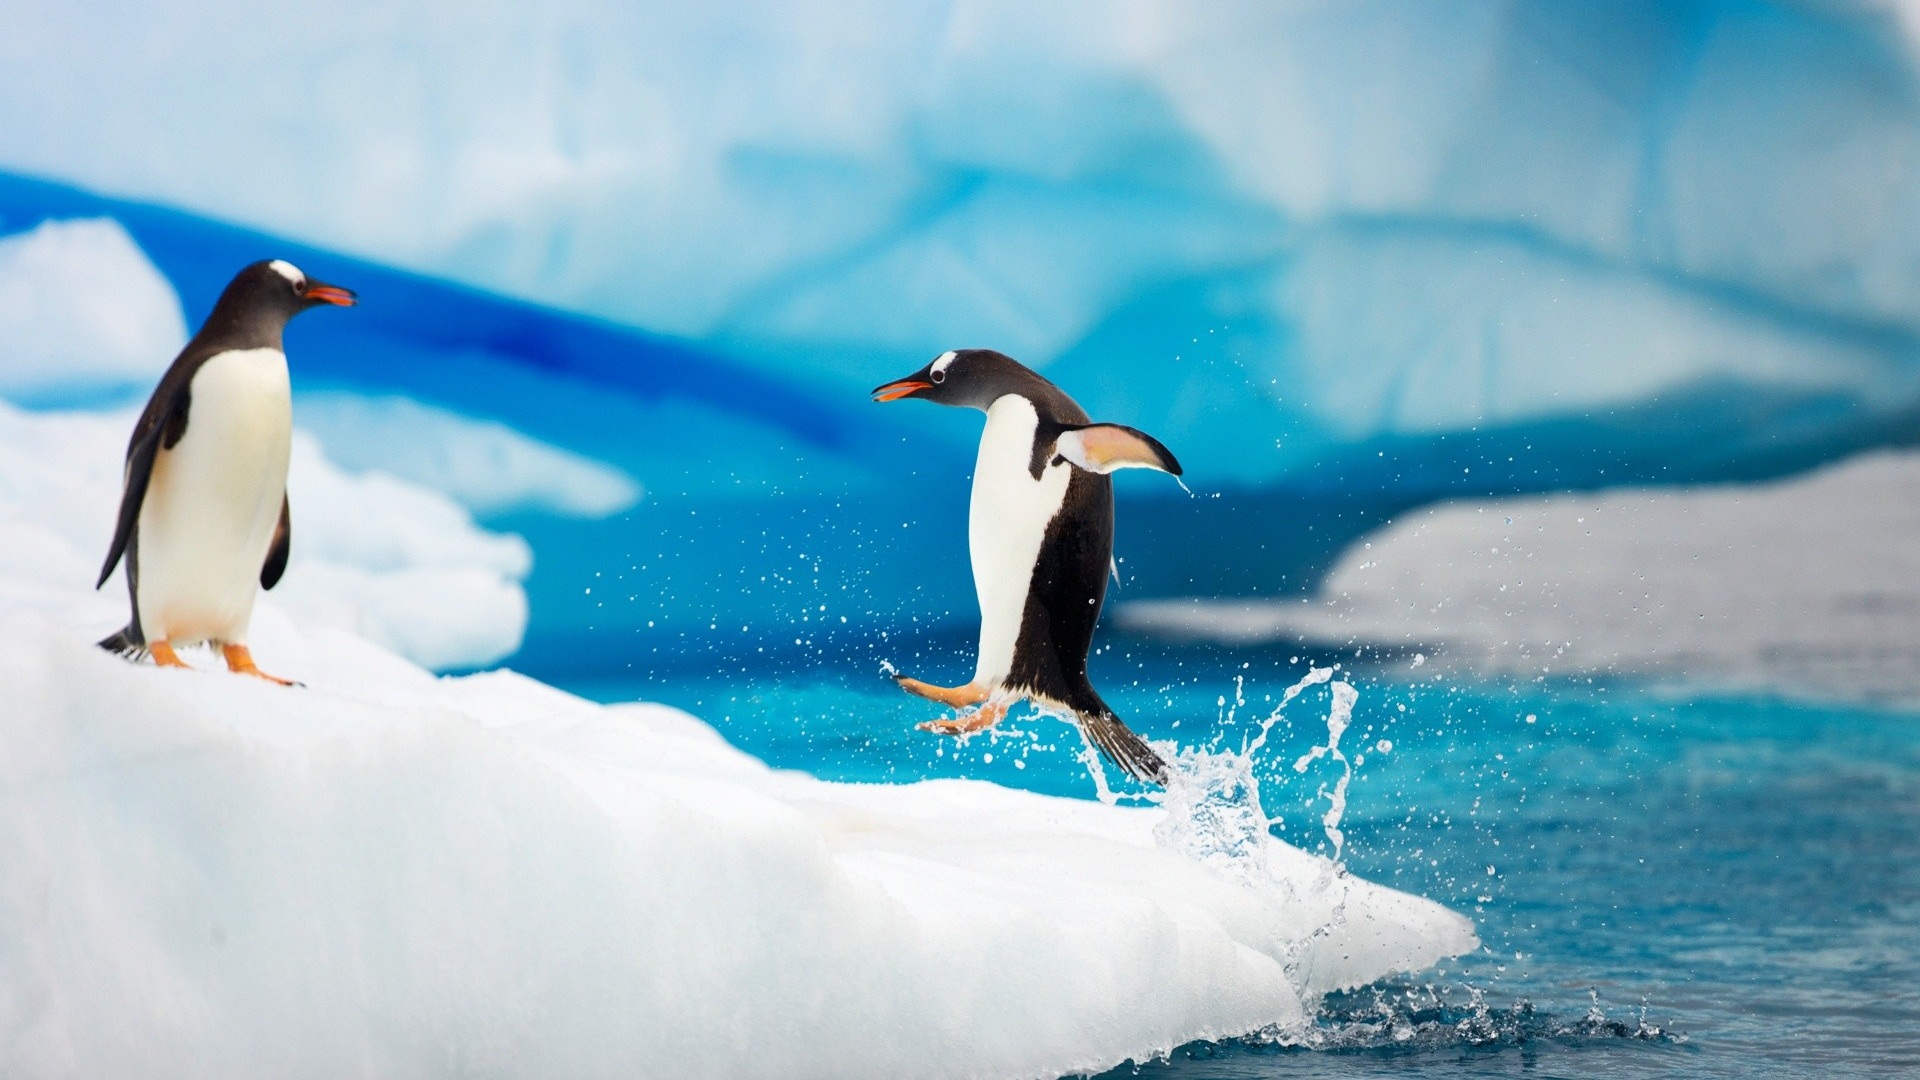 Happy-Antarctic-penguins-on-ice_1920x1080.jpg